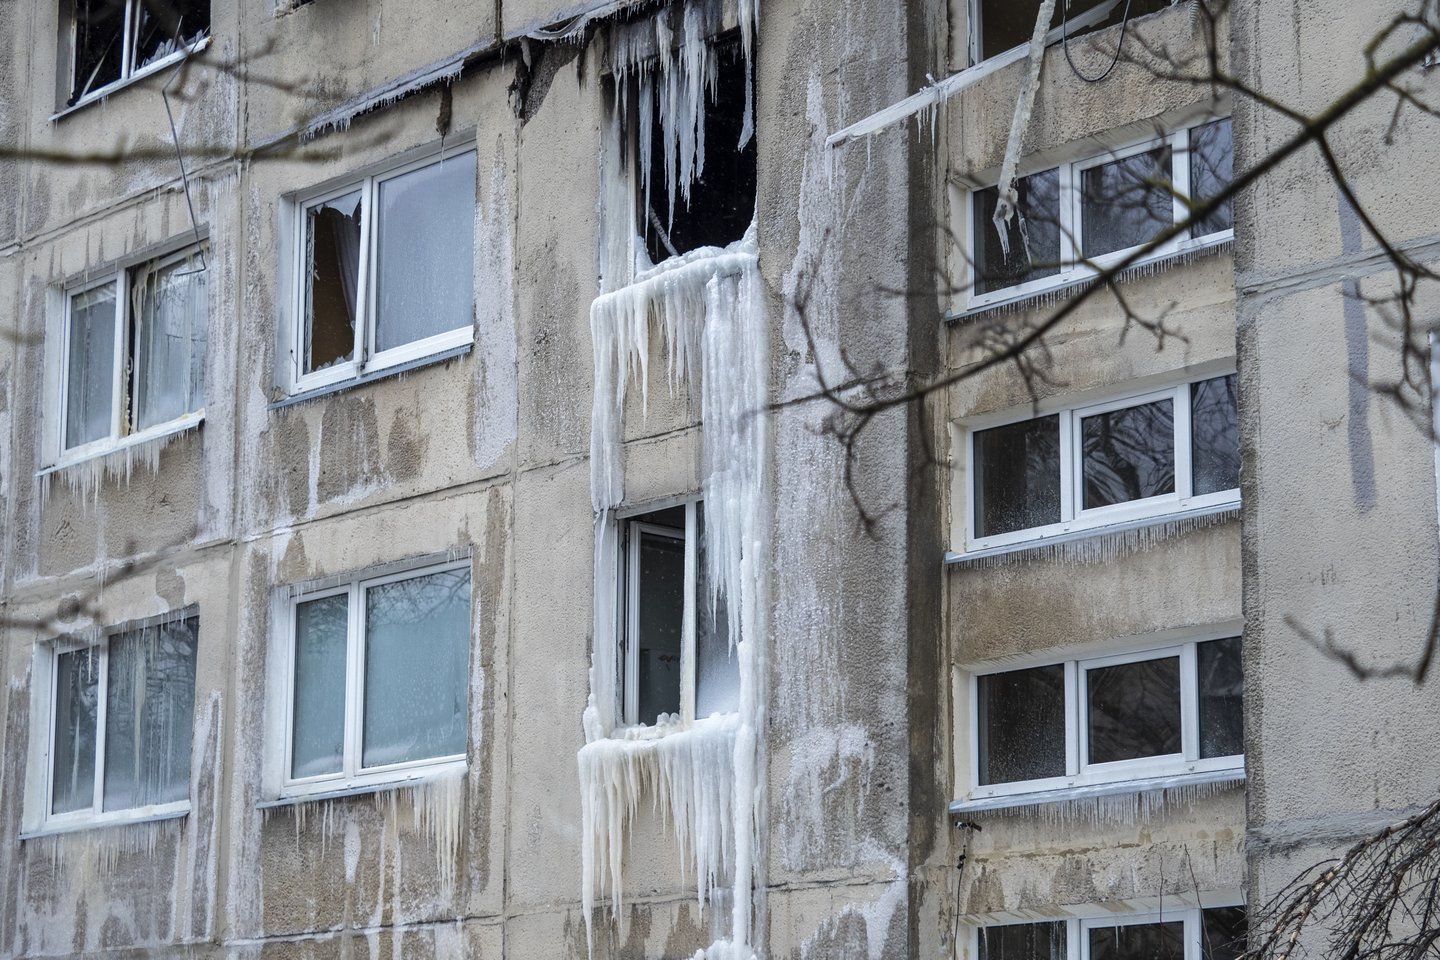 Kitą savaitę avarijos Viršuliškių daugiabutyje tyrimo komisija teiks galutinę išvadą dėl pastato būklės.<br>V.Ščiavinsko nuotr.